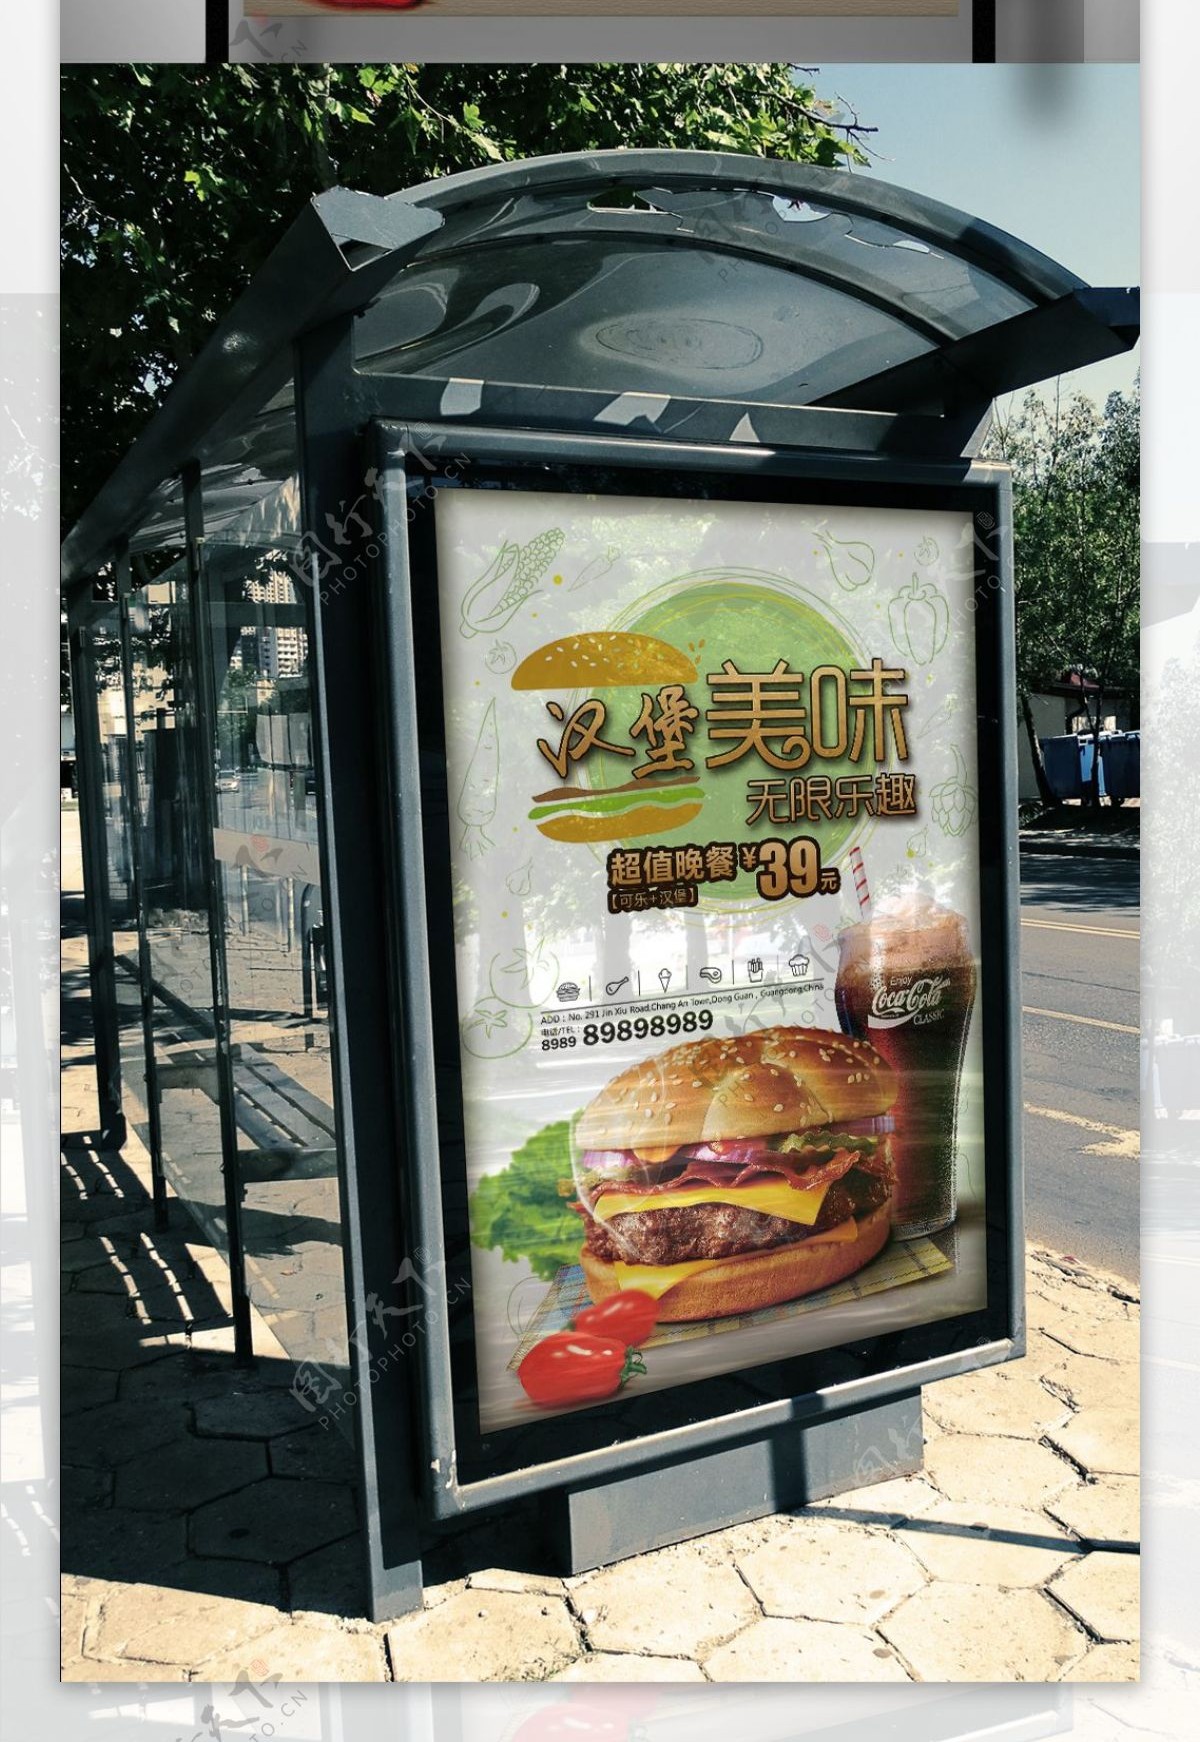 汉堡店美式台湾热狗特色美味热狗小吃店海报